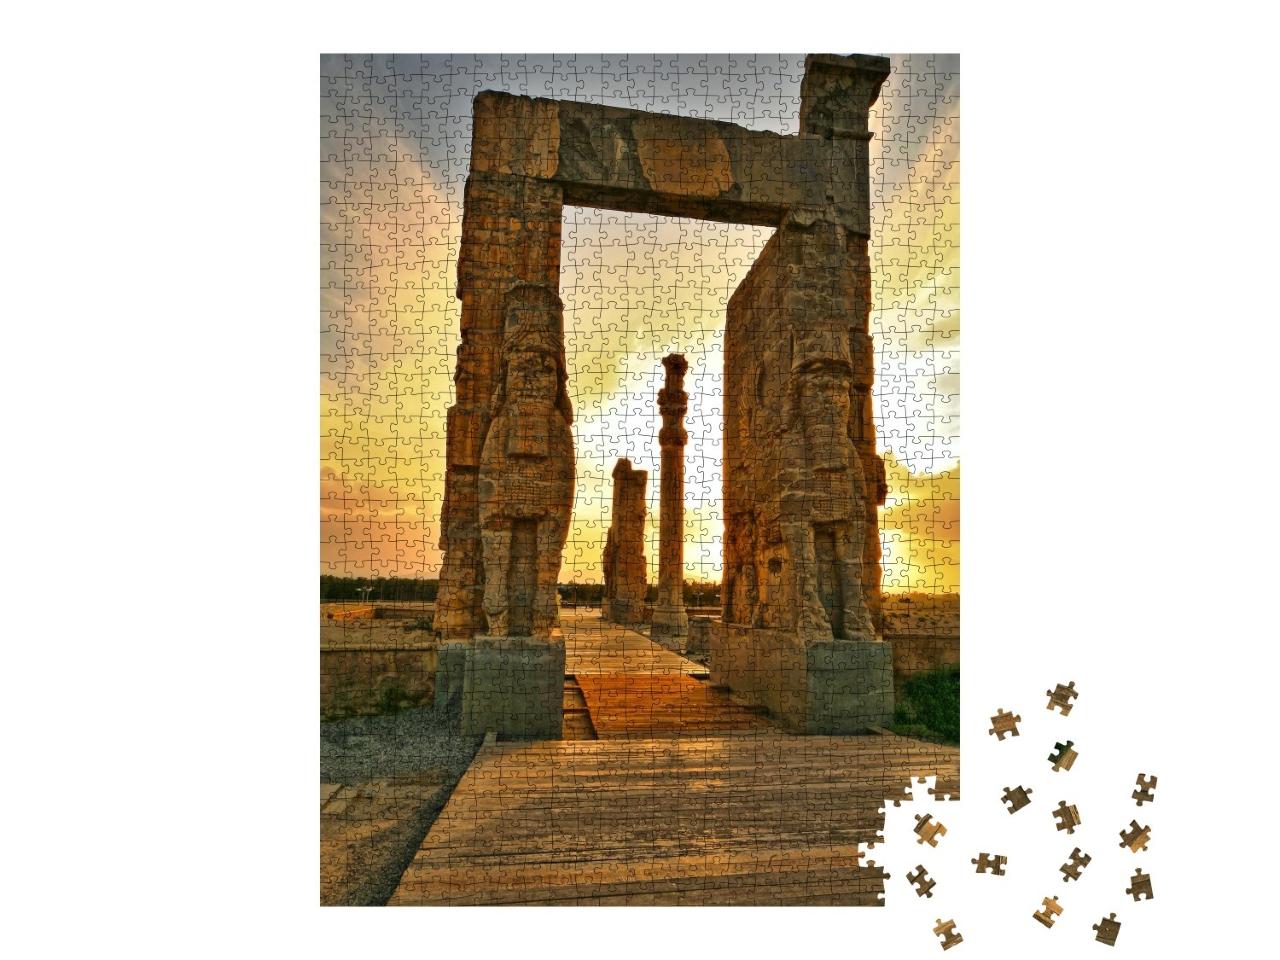 Puzzle de 1000 pièces « Porte des scarabées de Persépolis, Fars, Shiraz »